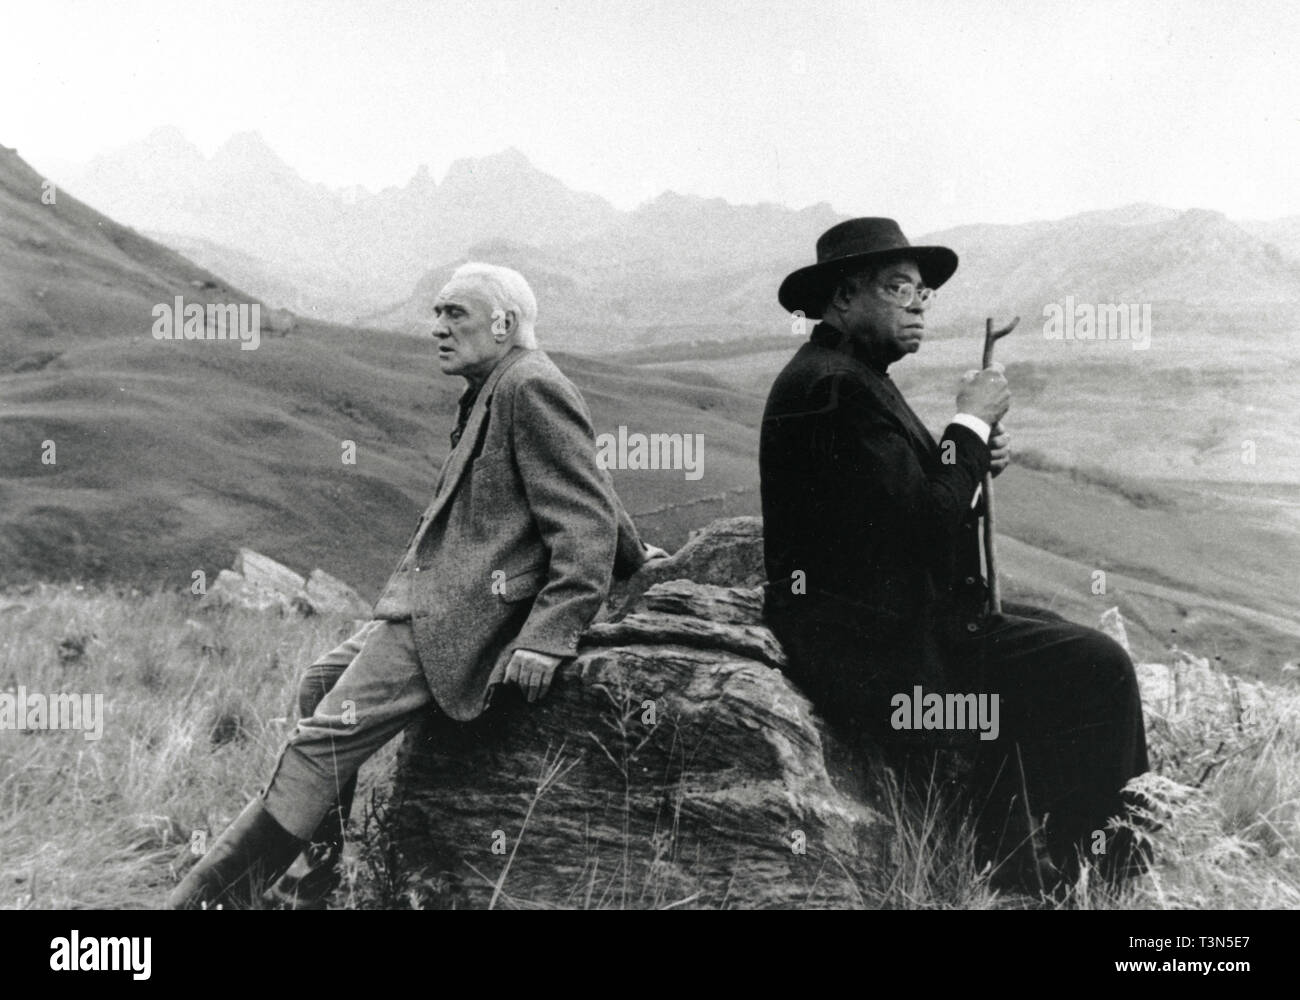 Richard Harris et Charles S. Dutton dans le film Cry, le pays bien-aimé, 1995 Banque D'Images